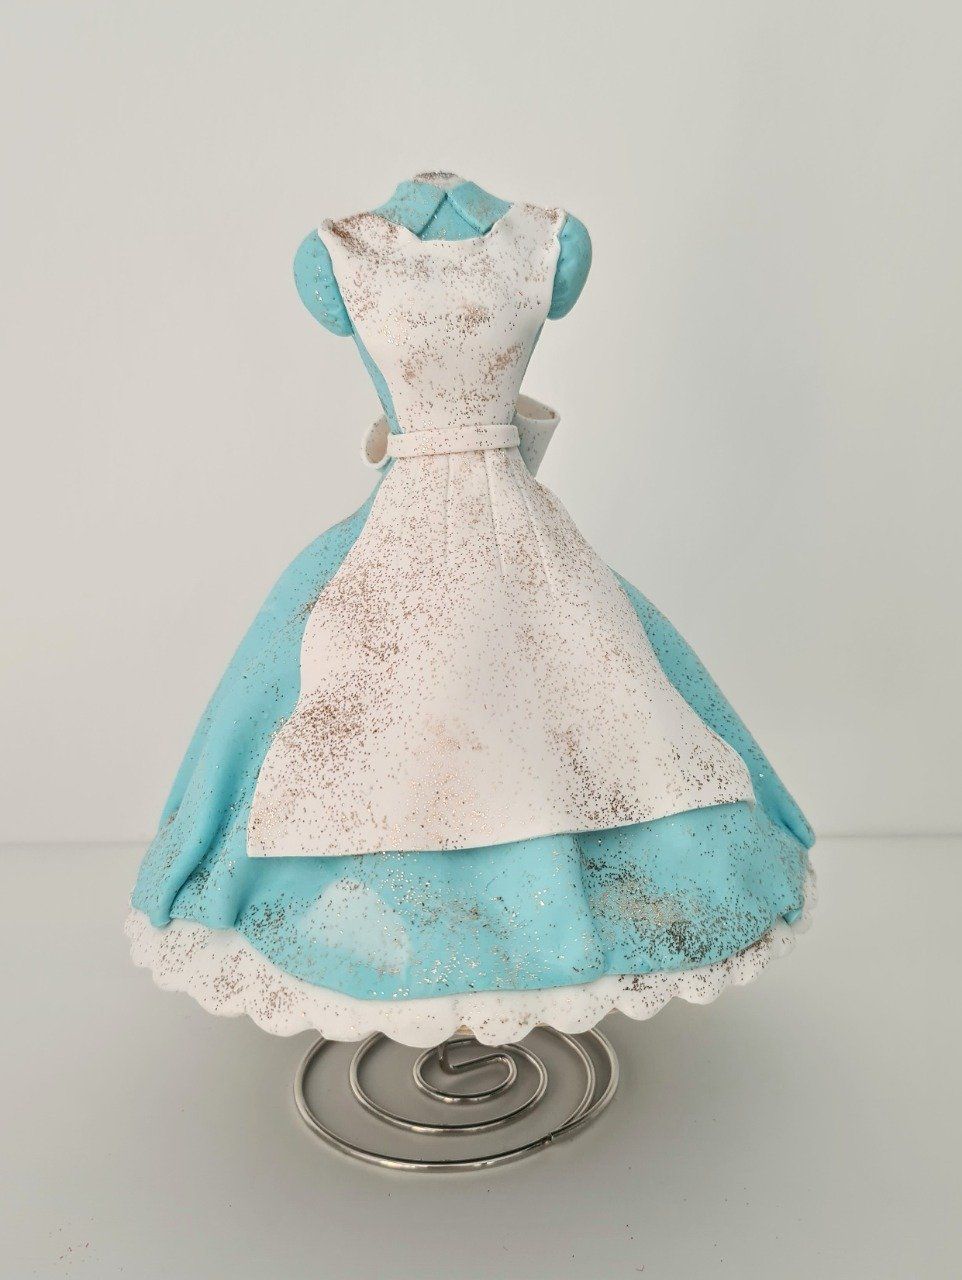 La robe sous cloche d'Alice inclus dans le thème